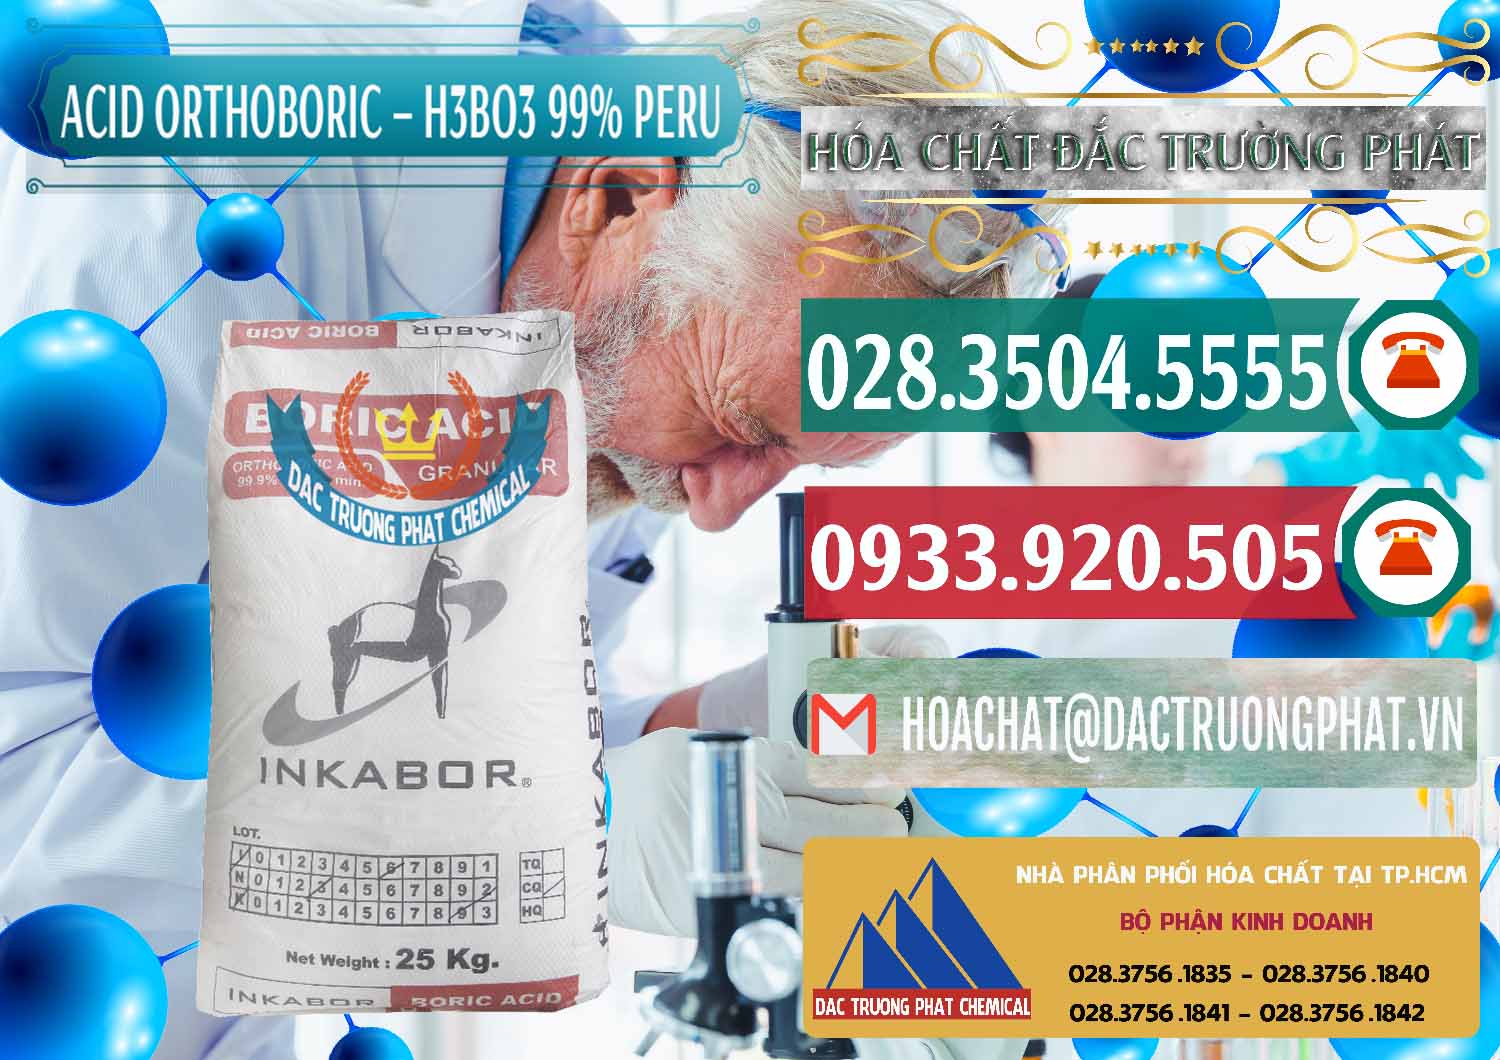 Cty chuyên phân phối & bán Acid Boric – Axit Boric H3BO3 99% Inkabor Peru - 0280 - Công ty nhập khẩu & phân phối hóa chất tại TP.HCM - muabanhoachat.vn